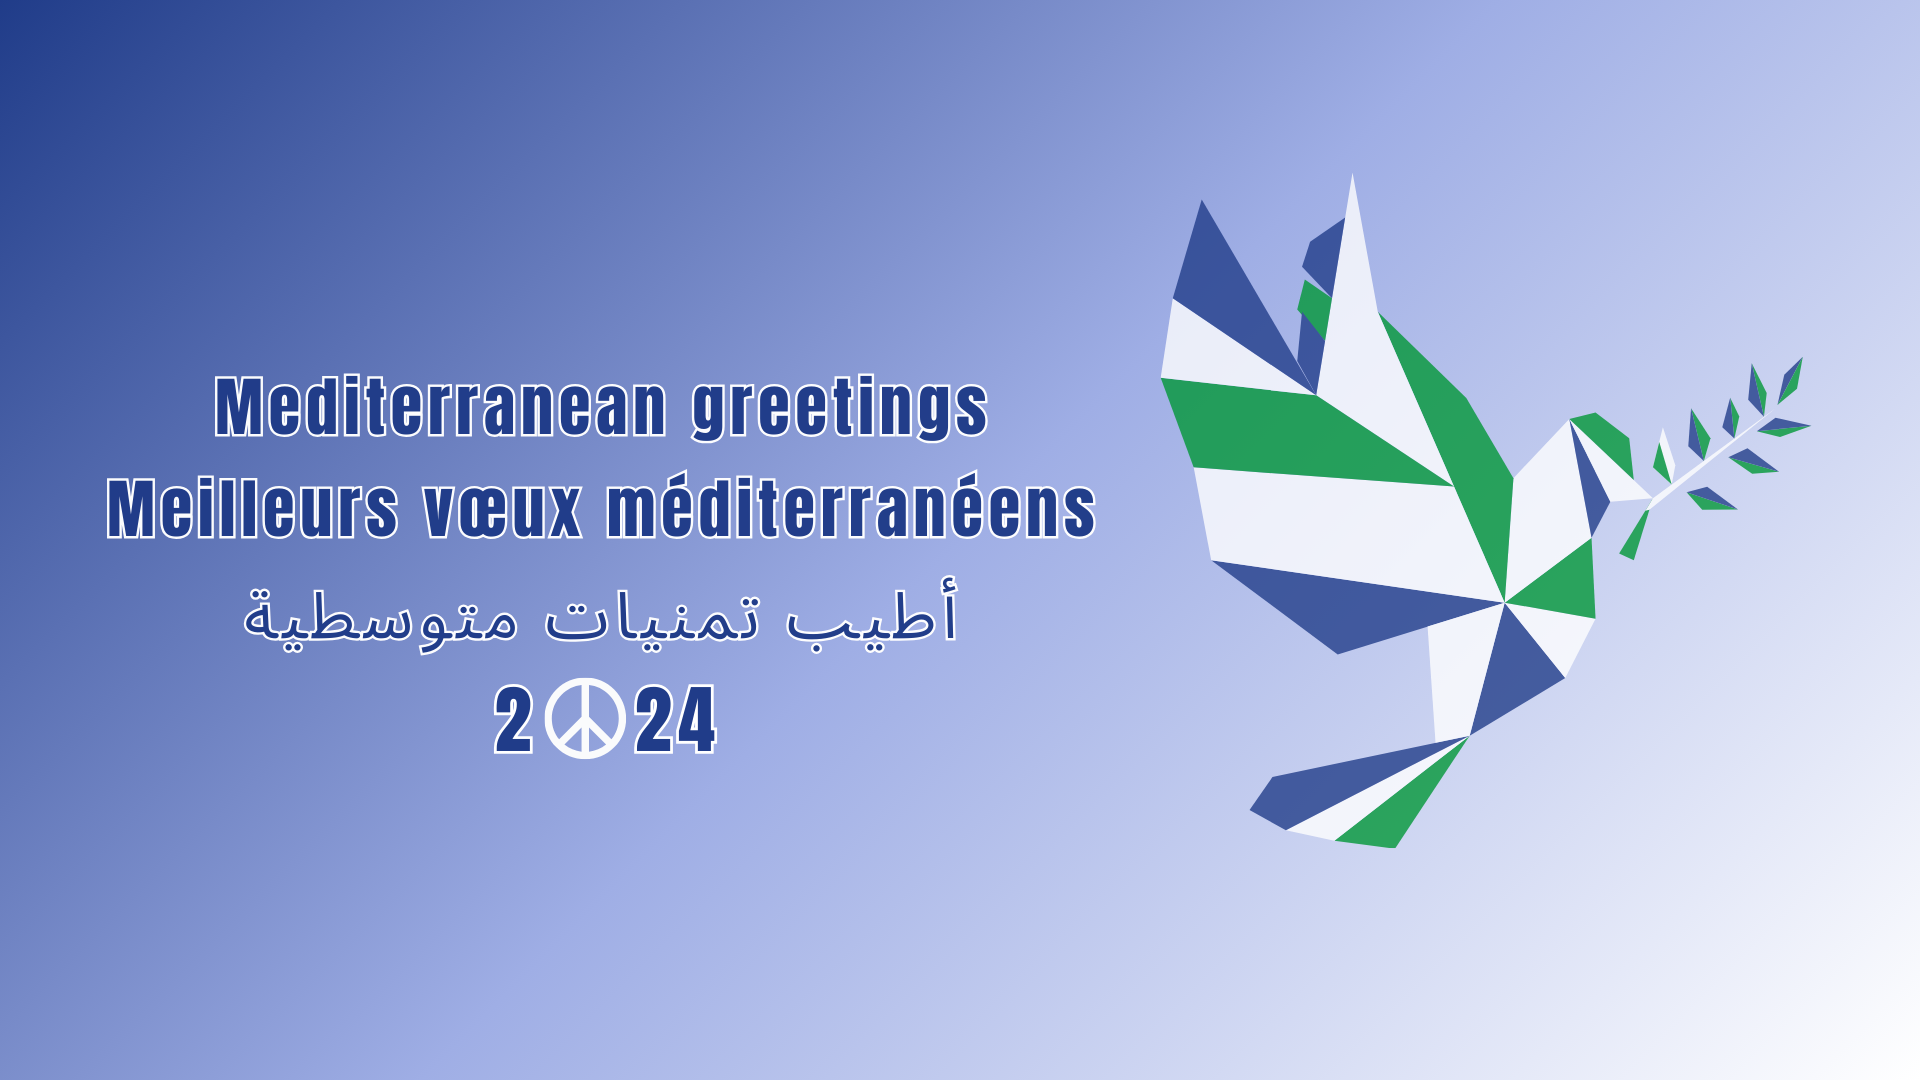 Mediterranean greetings 2024